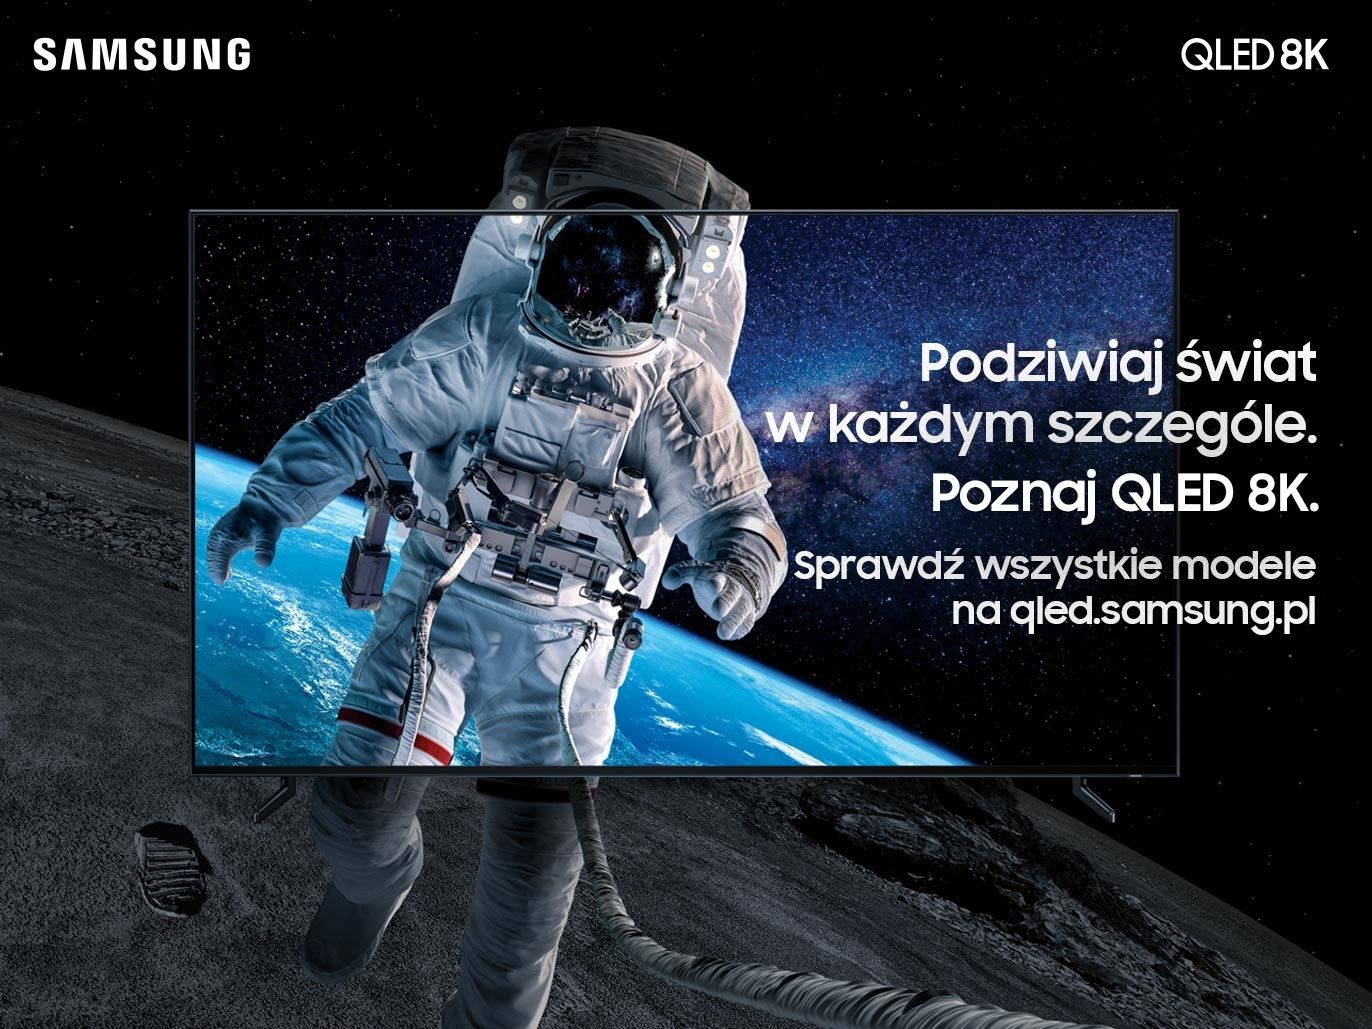 Pierwszą kampanią realizowaną przez K2 dla marki Samsung jest launch nowej linii telewizorów QLED